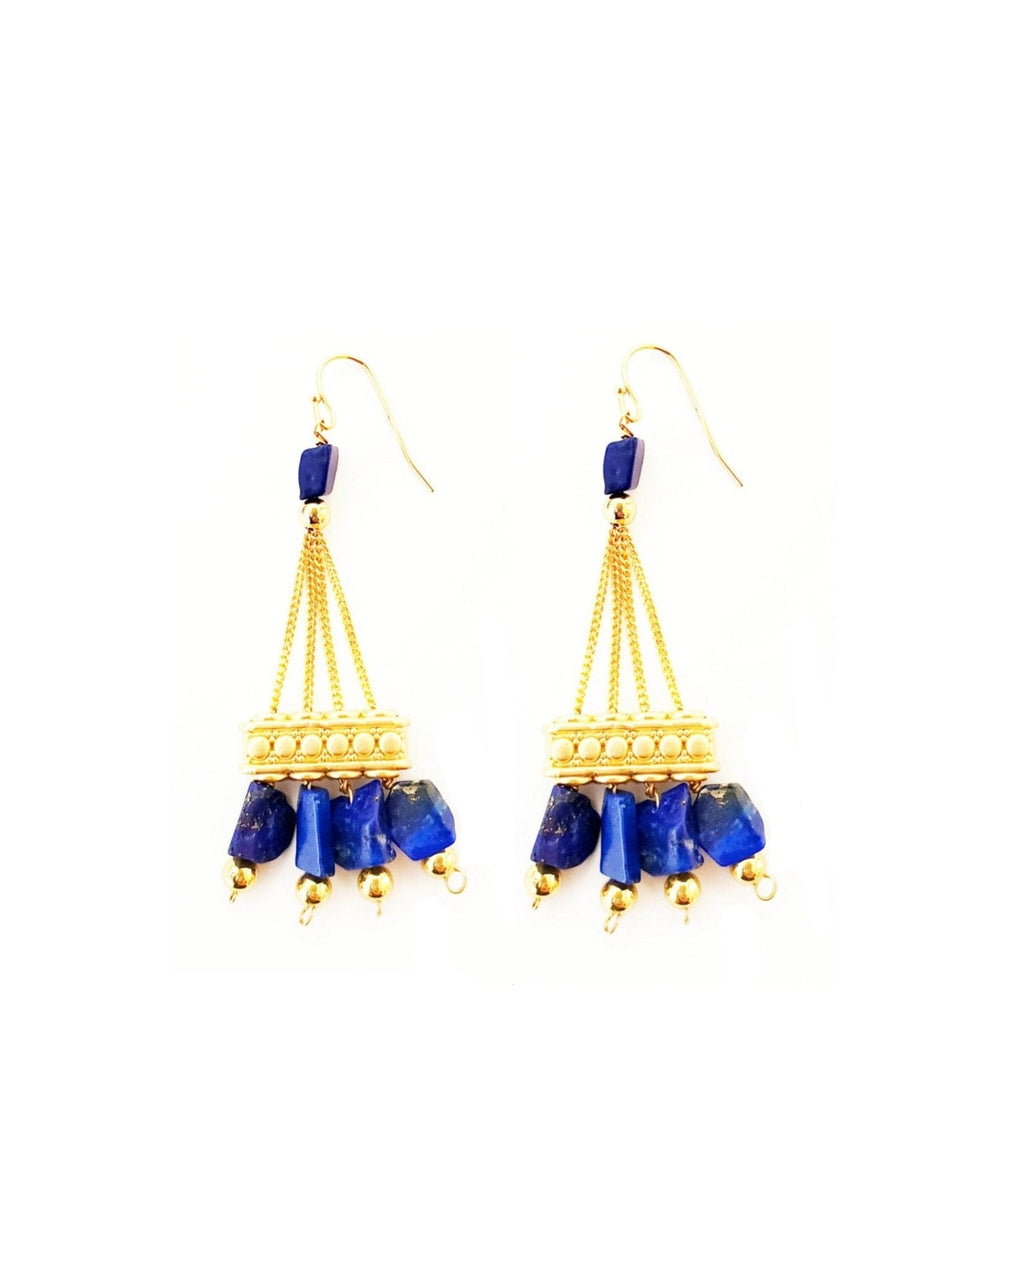 MINU Jewels Earrings Lapis Women's Xena Chandeliers Earrings in Turquoise or Lapis  | MINU